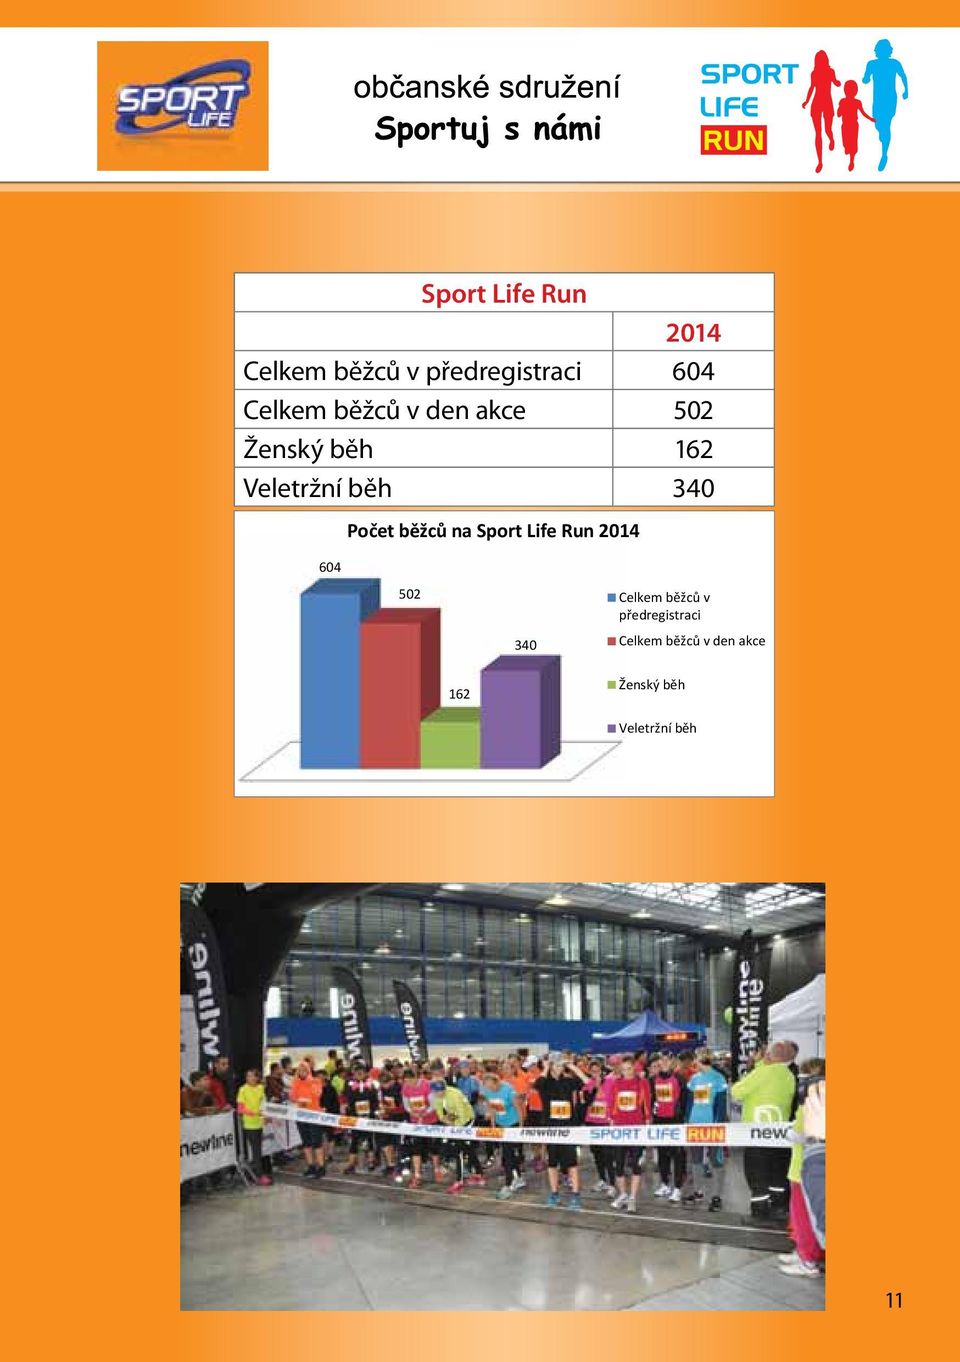 Počet běžců na Sport Life Run 2014 502 Celkem běžců v